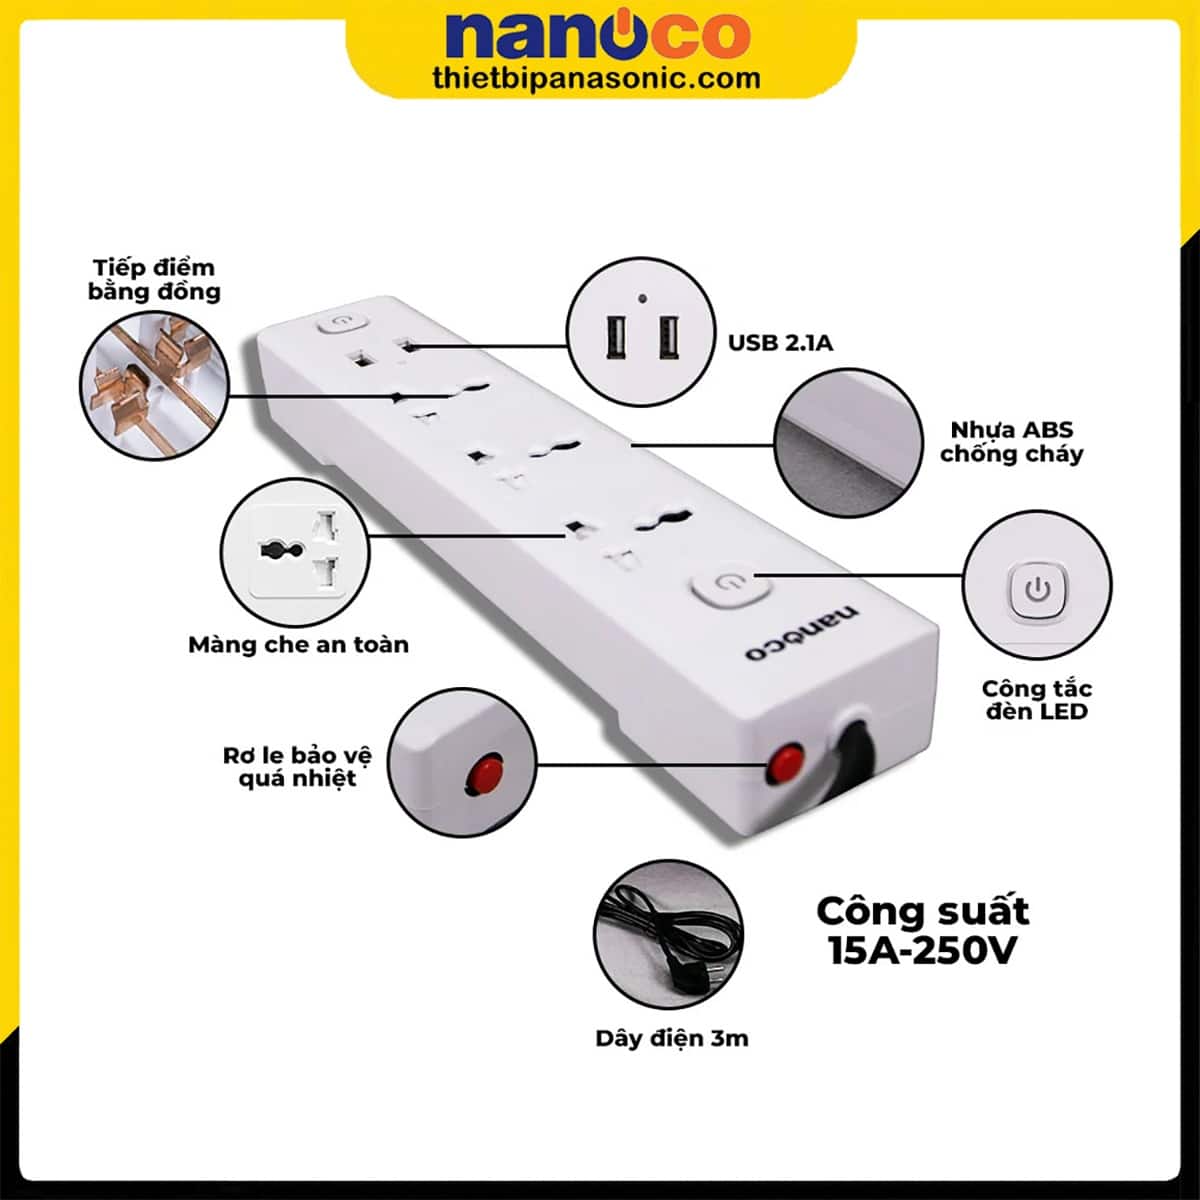 Những đặc điểm nổi bật của Ổ cắm có dây Nanoco NES332U-3